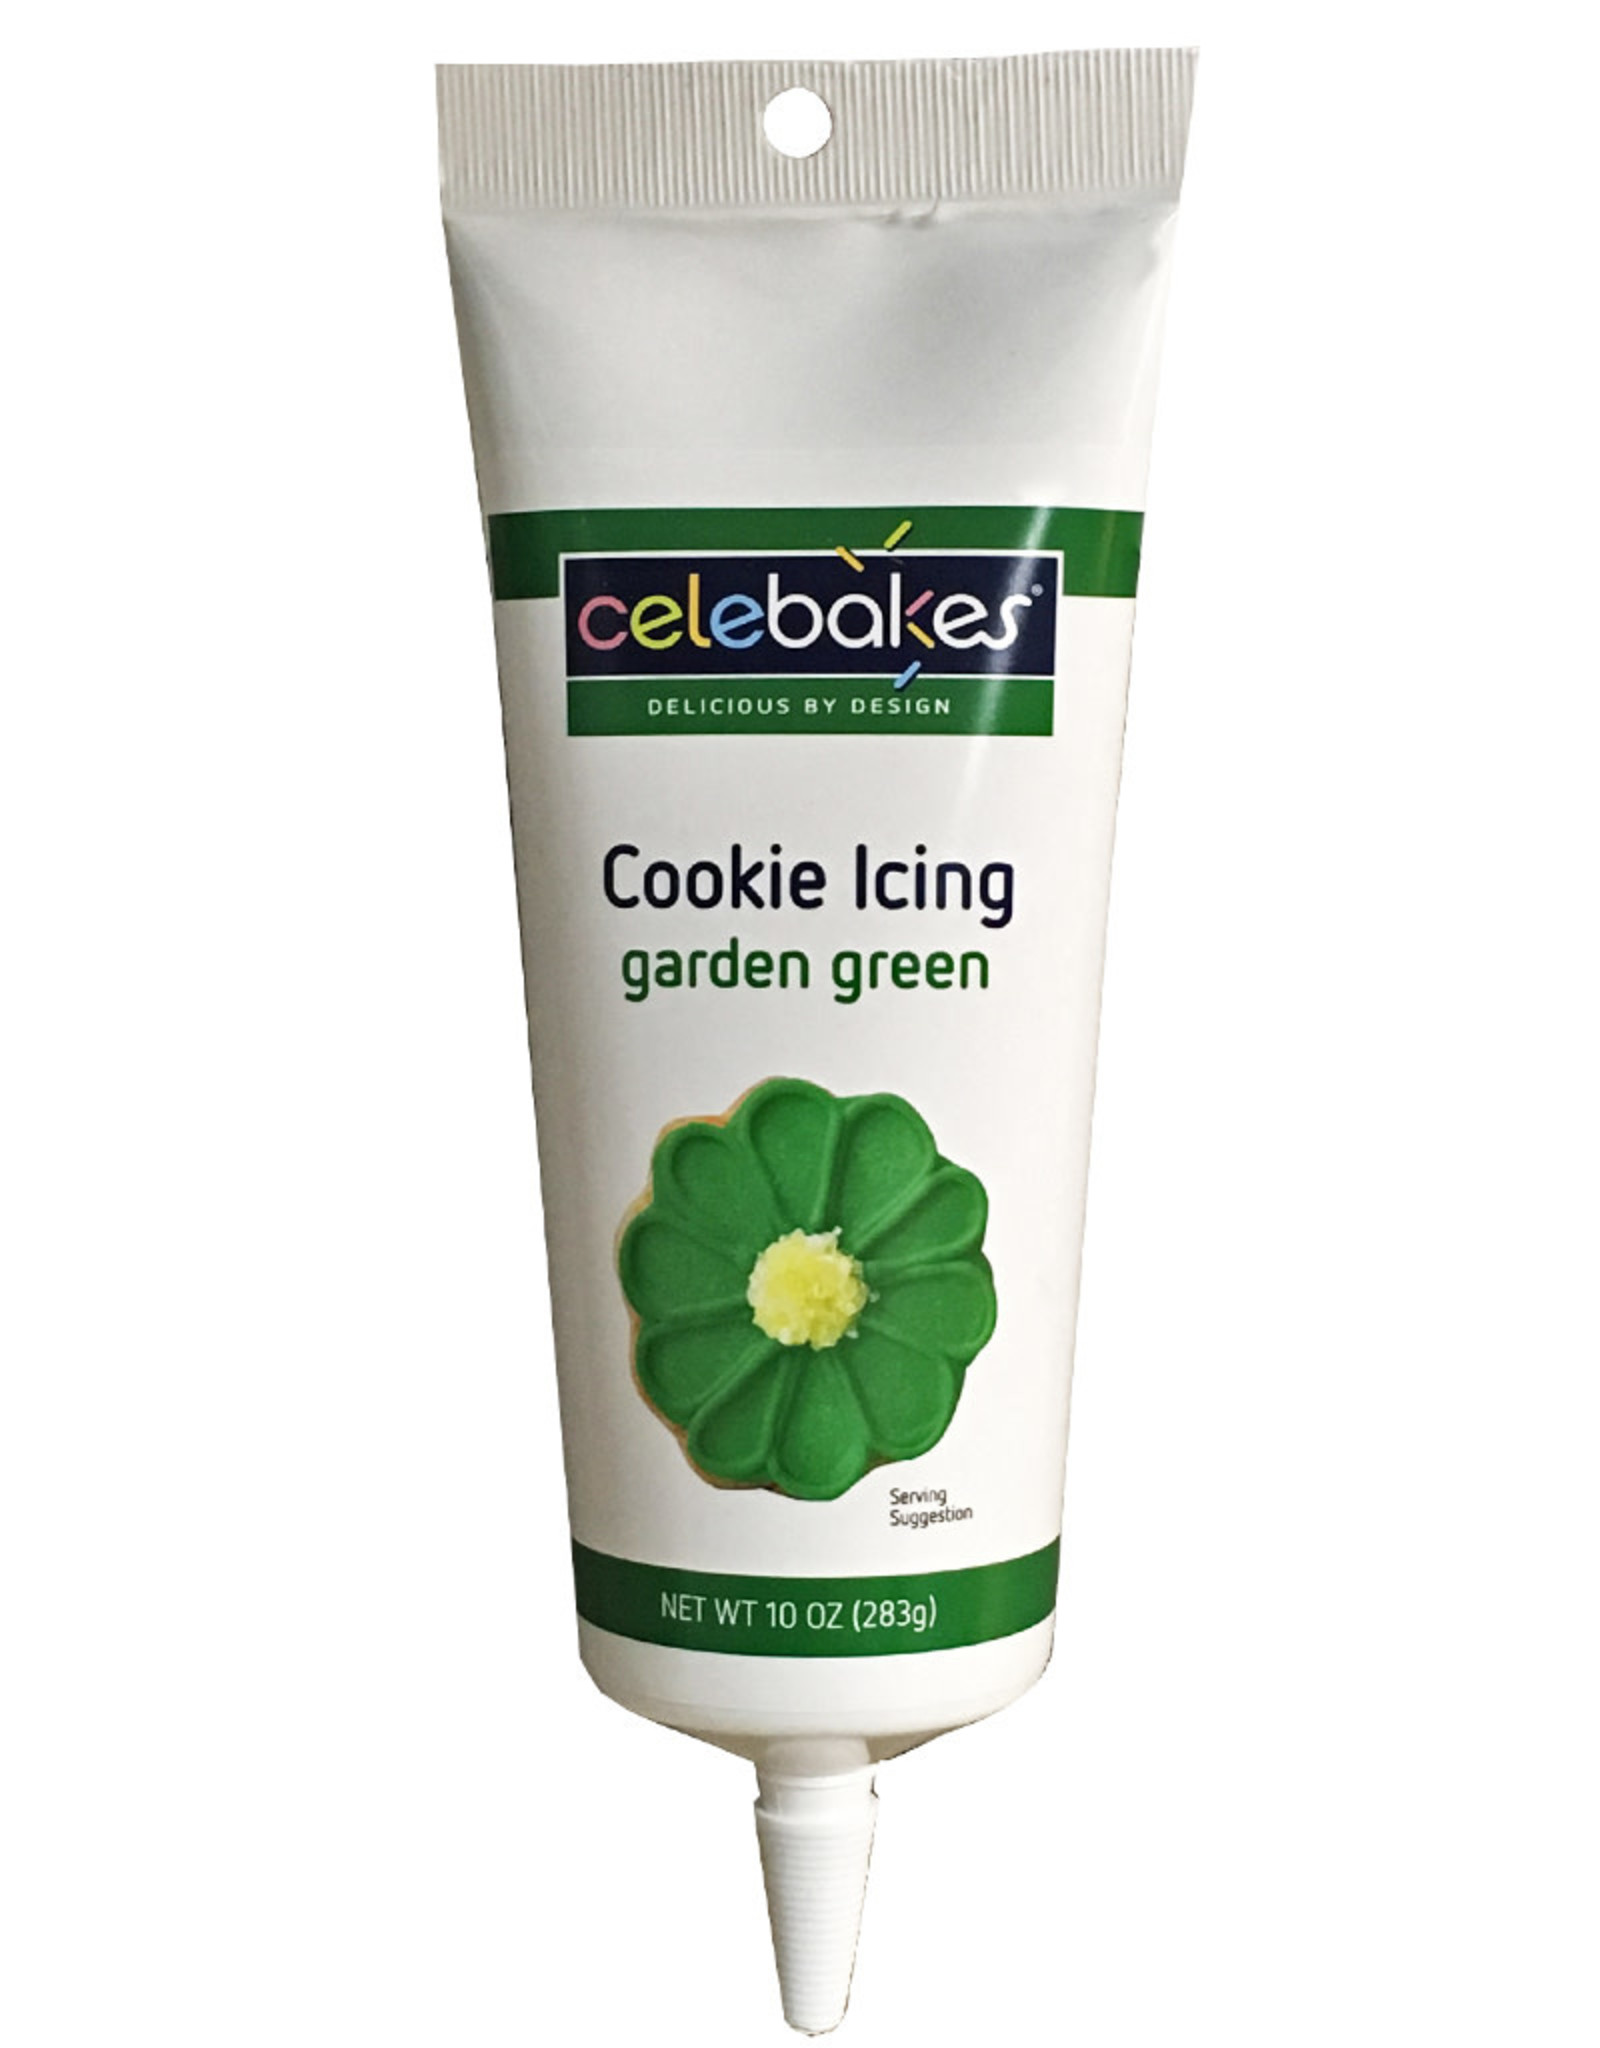 Celebakes Cookie Icing (Garden Green)